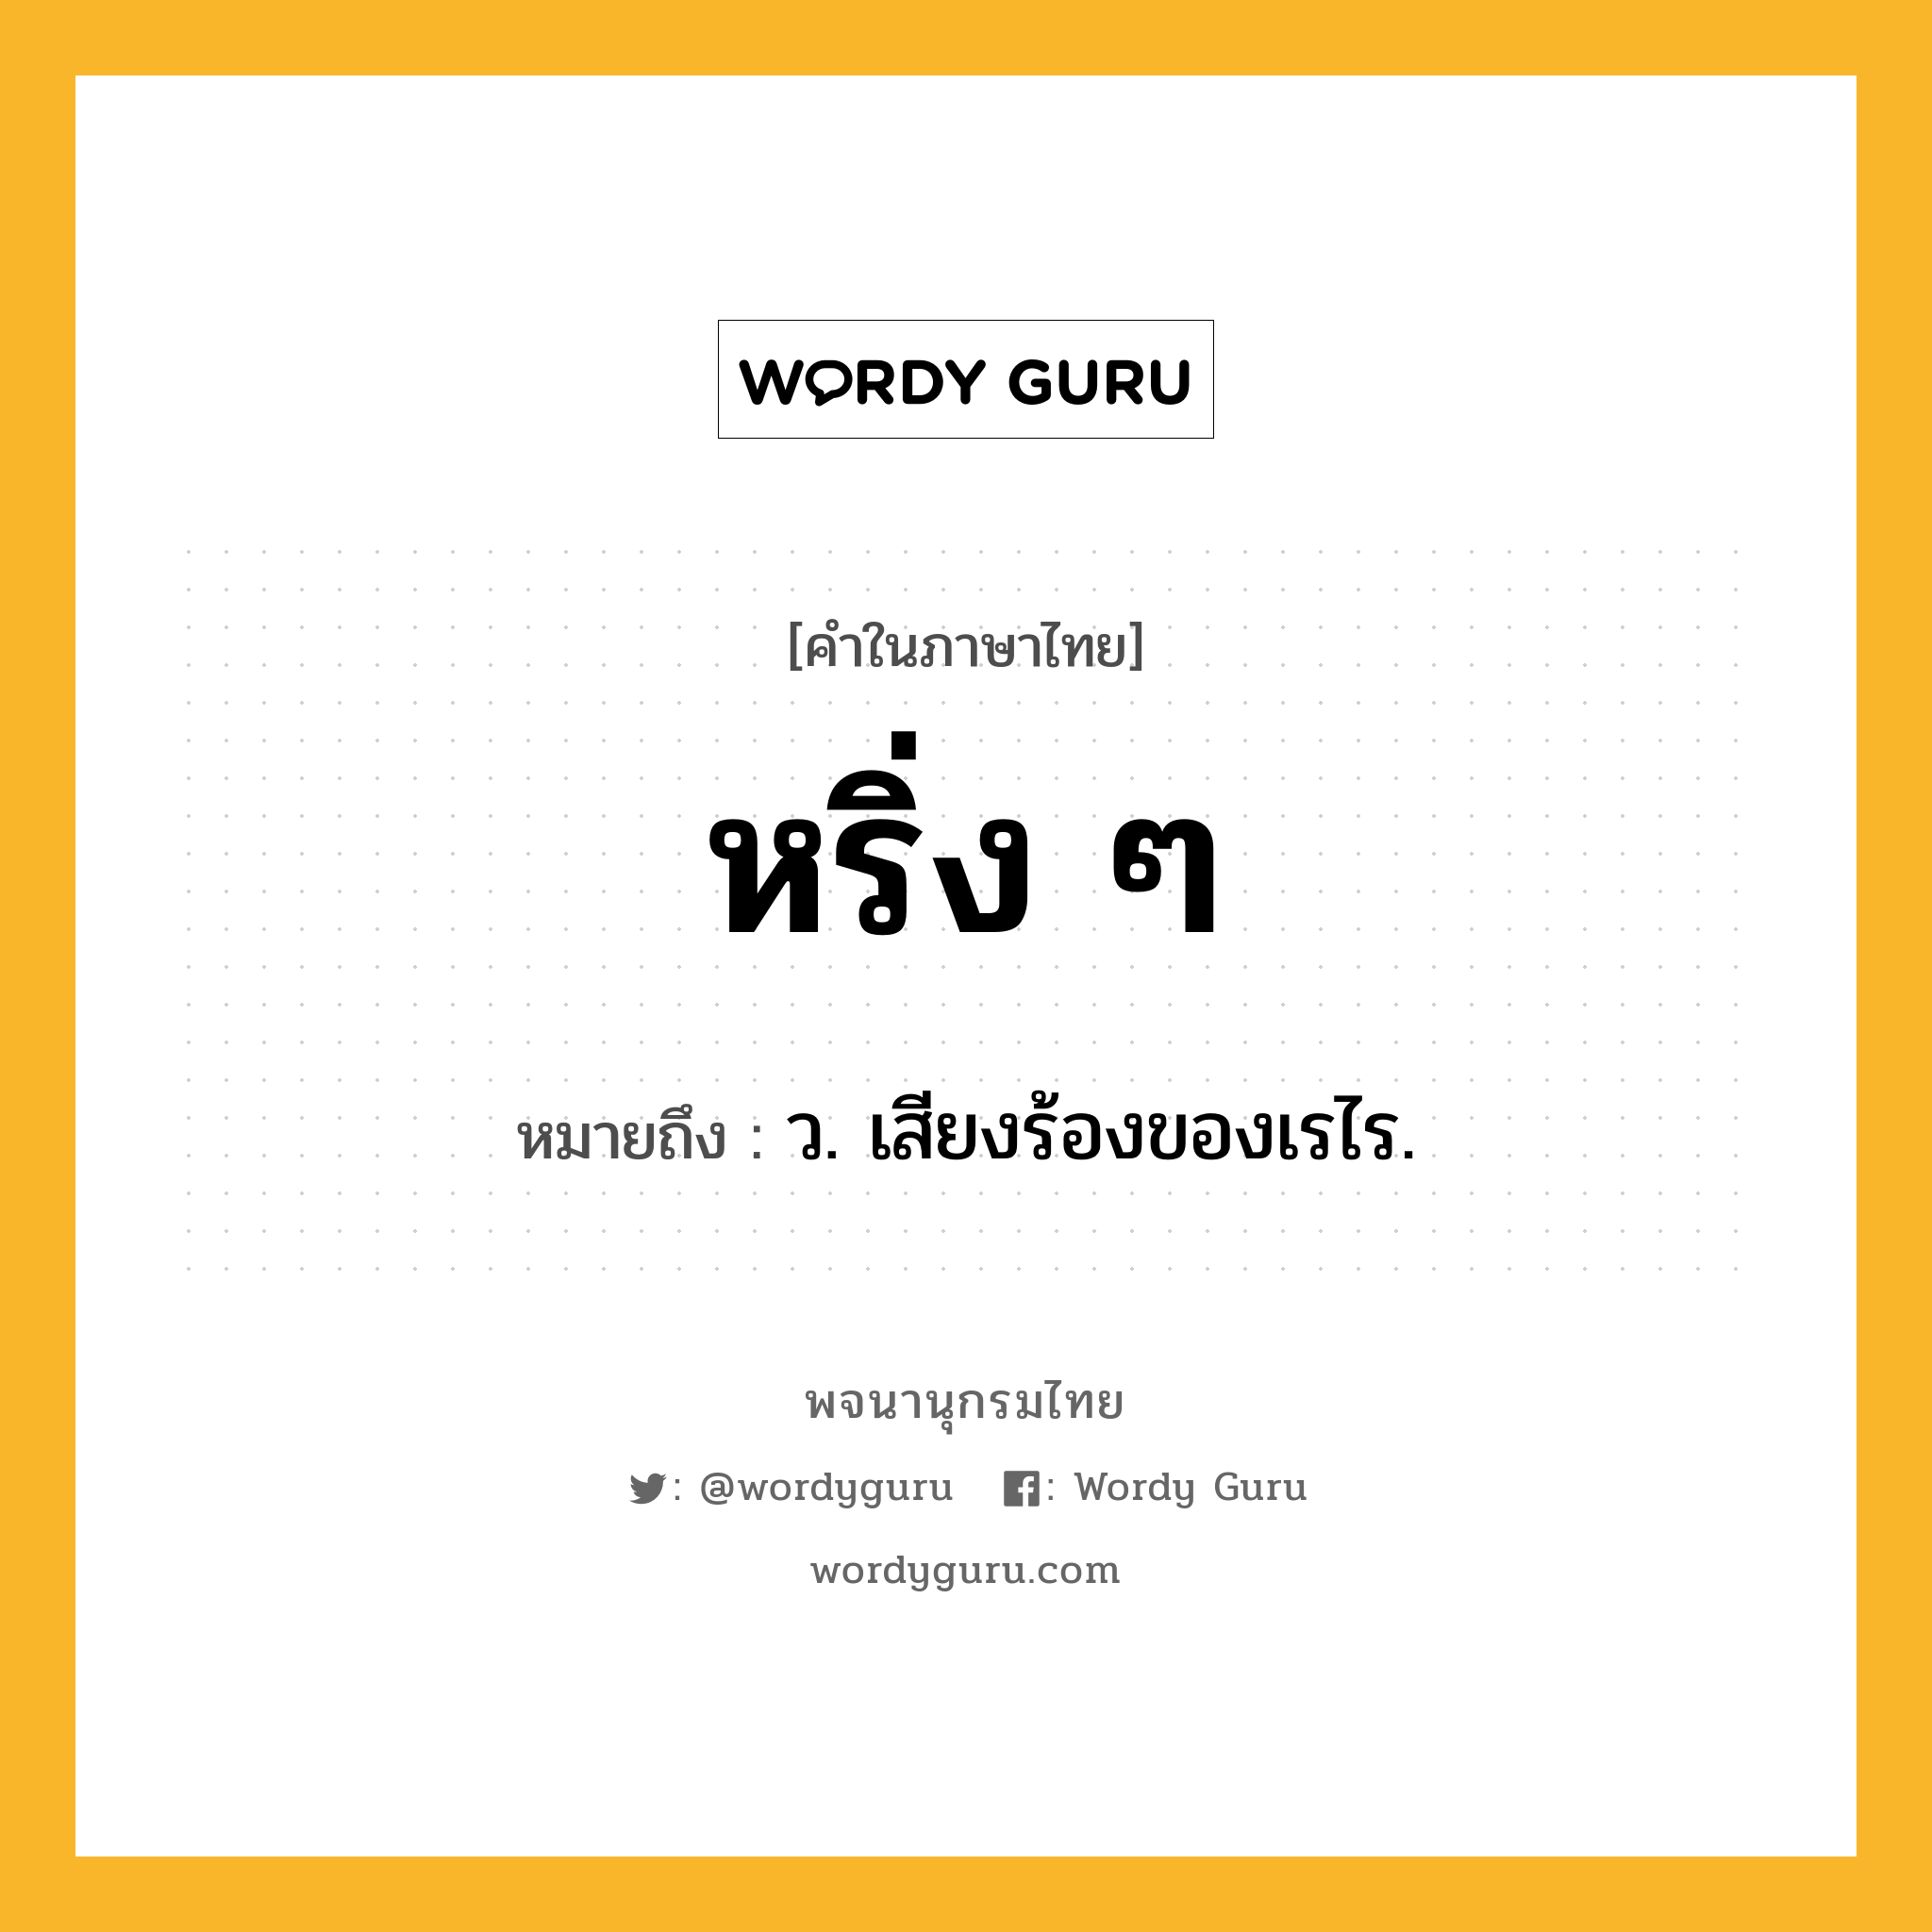 หริ่ง ๆ หมายถึงอะไร?, คำในภาษาไทย หริ่ง ๆ หมายถึง ว. เสียงร้องของเรไร.